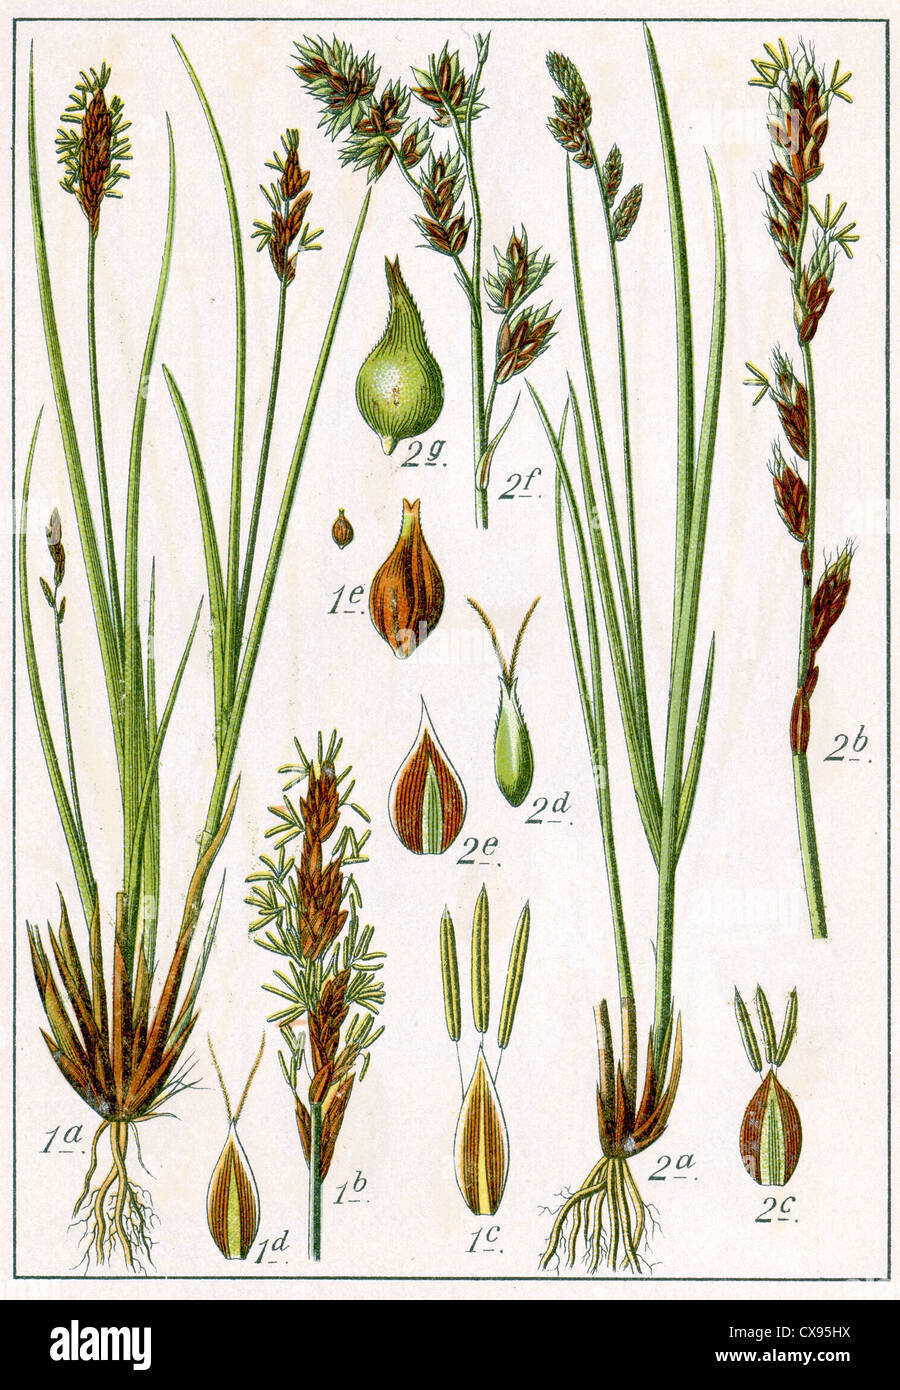 Carex paradoxa - Carex paniculata Stock Photo